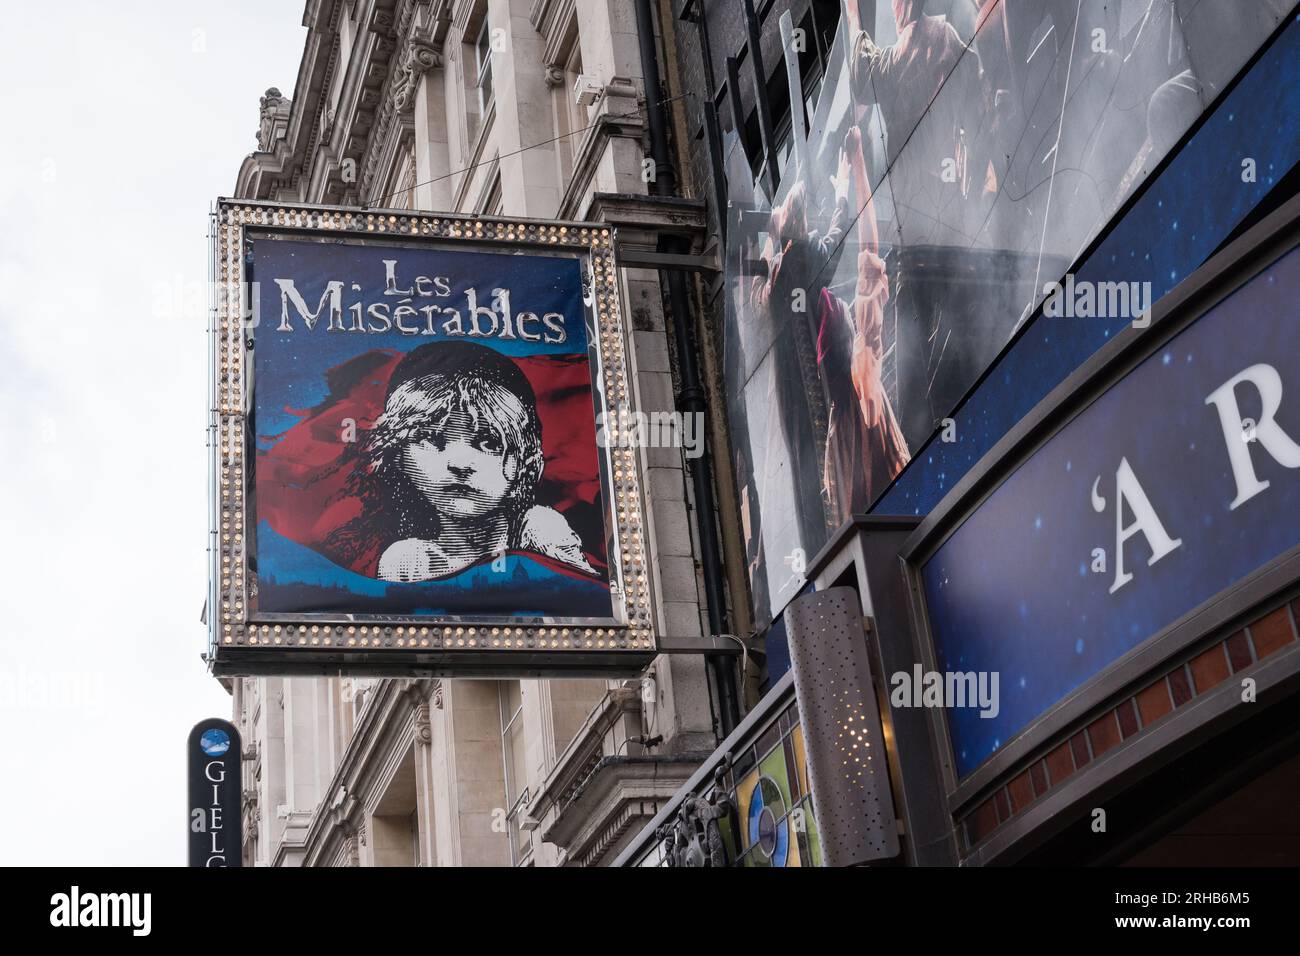 Signalisation théâtrale les Misérables au Sondheim Theatre (anciennement Queen's Theatre) sur Shaftesbury Avenue, Soho, Central London, Angleterre, Royaume-Uni Banque D'Images